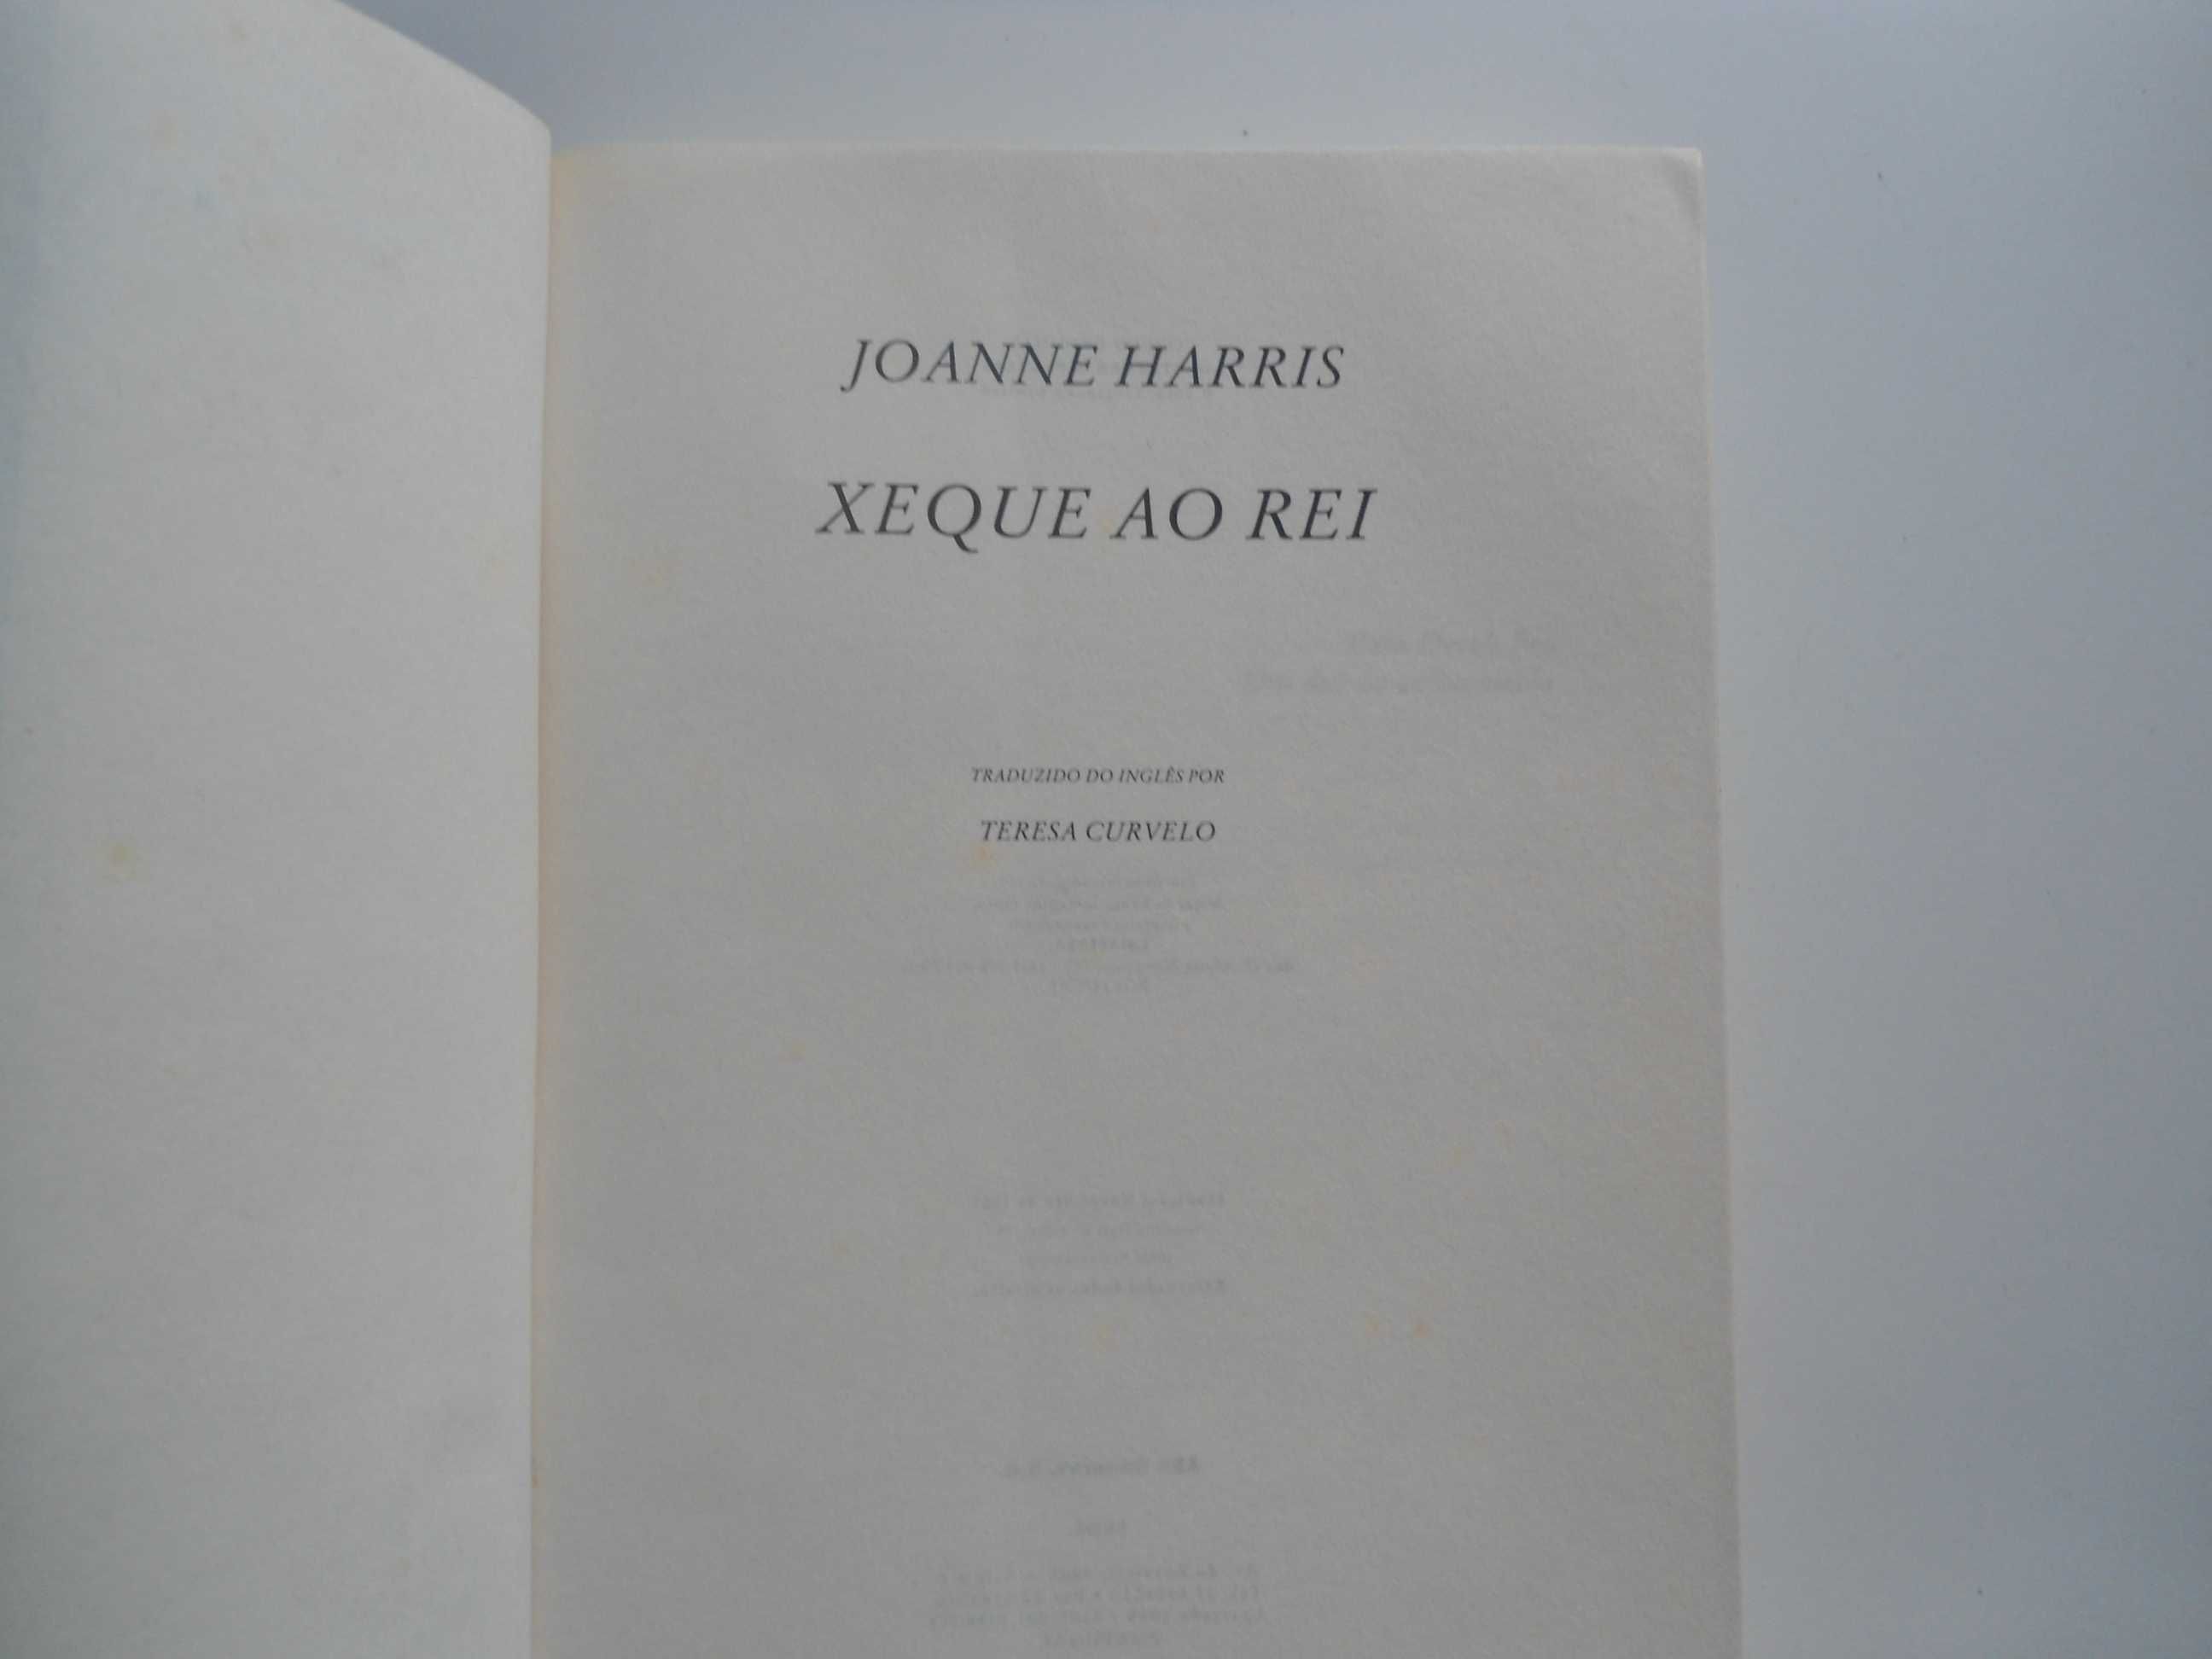 2 Livros de Joanne Harris (2004/2005) Lourinhã E Atalaia • OLX Portugal